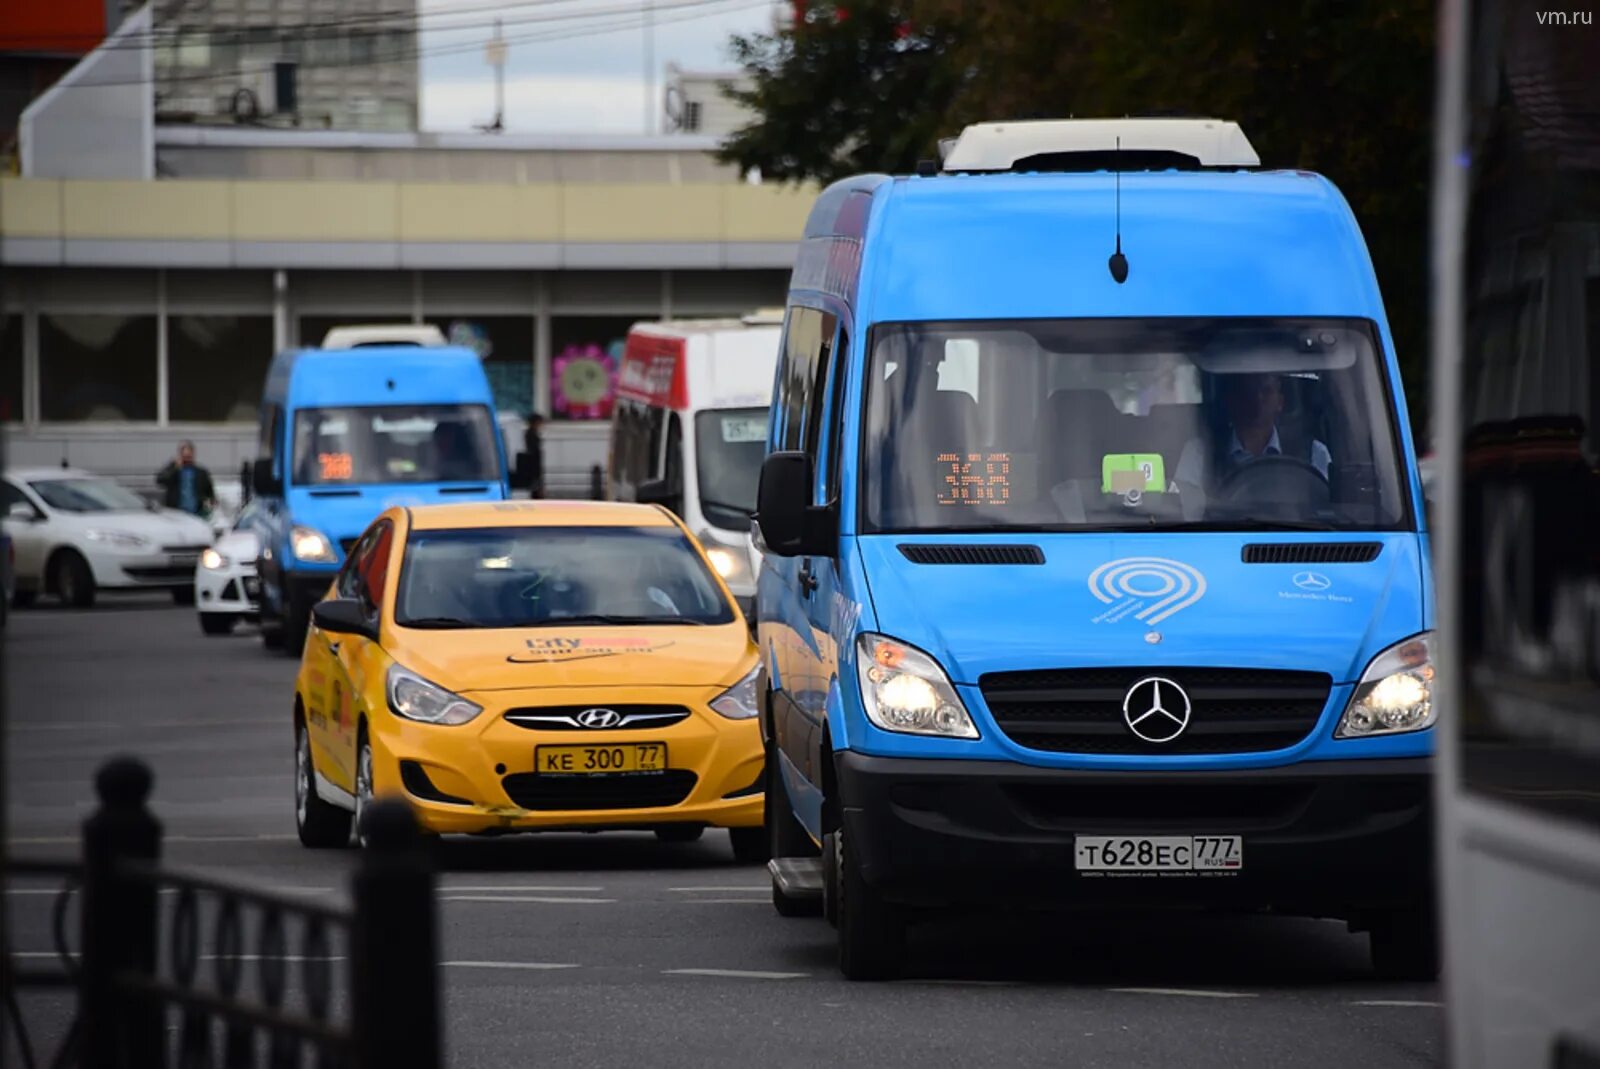 Fiat Ducato автобус Мосгортранс. Общественный транспорт такси. Маршрутное такси в Москве. Автобус и автомобиль. Маршрутное такси 7